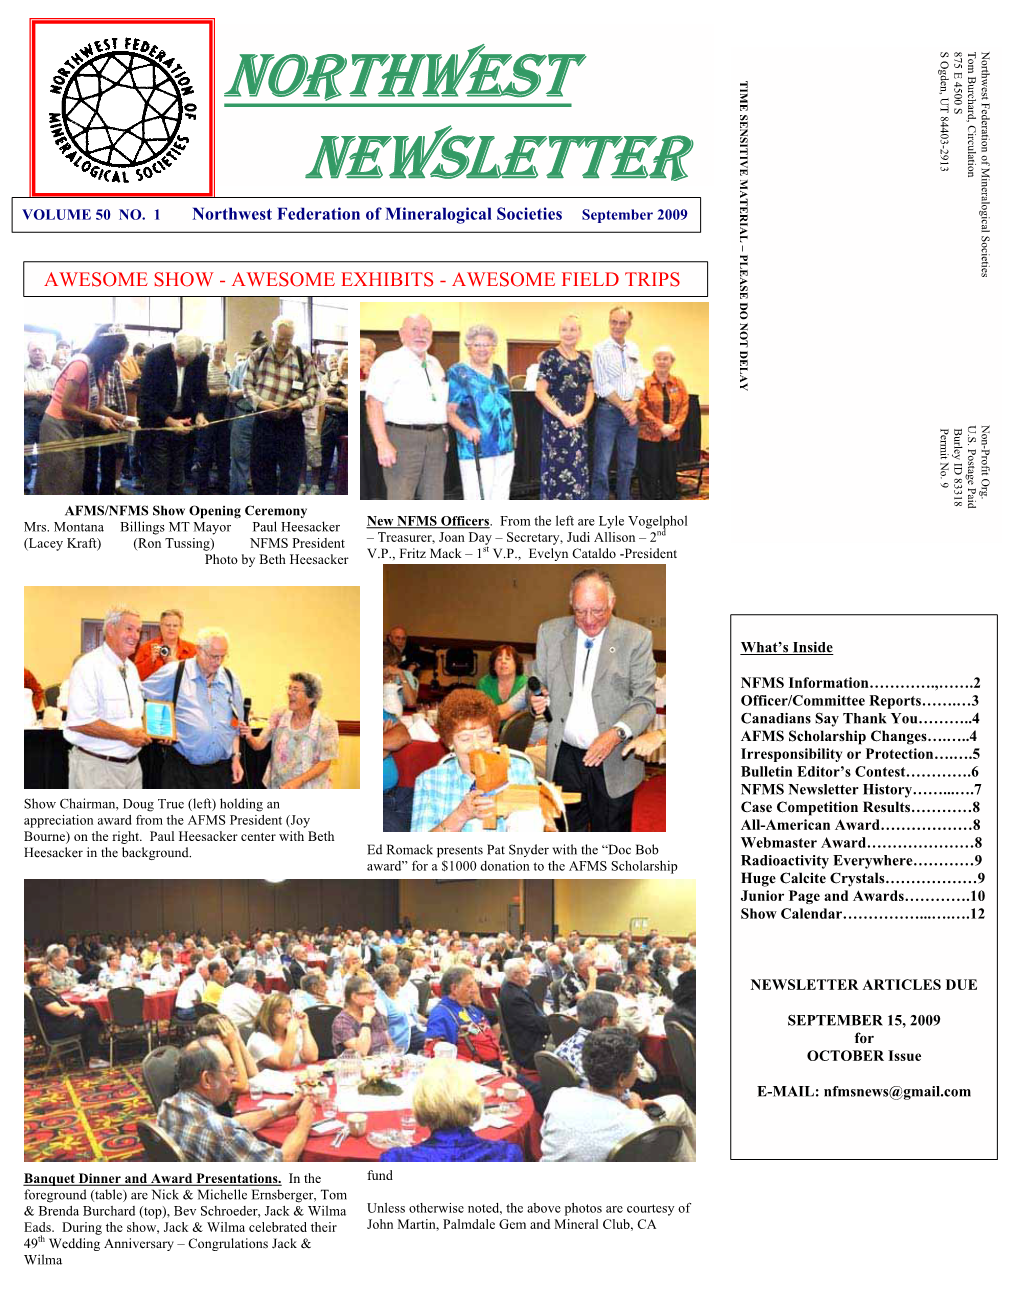 Northwest Newsletter Vol 50 No